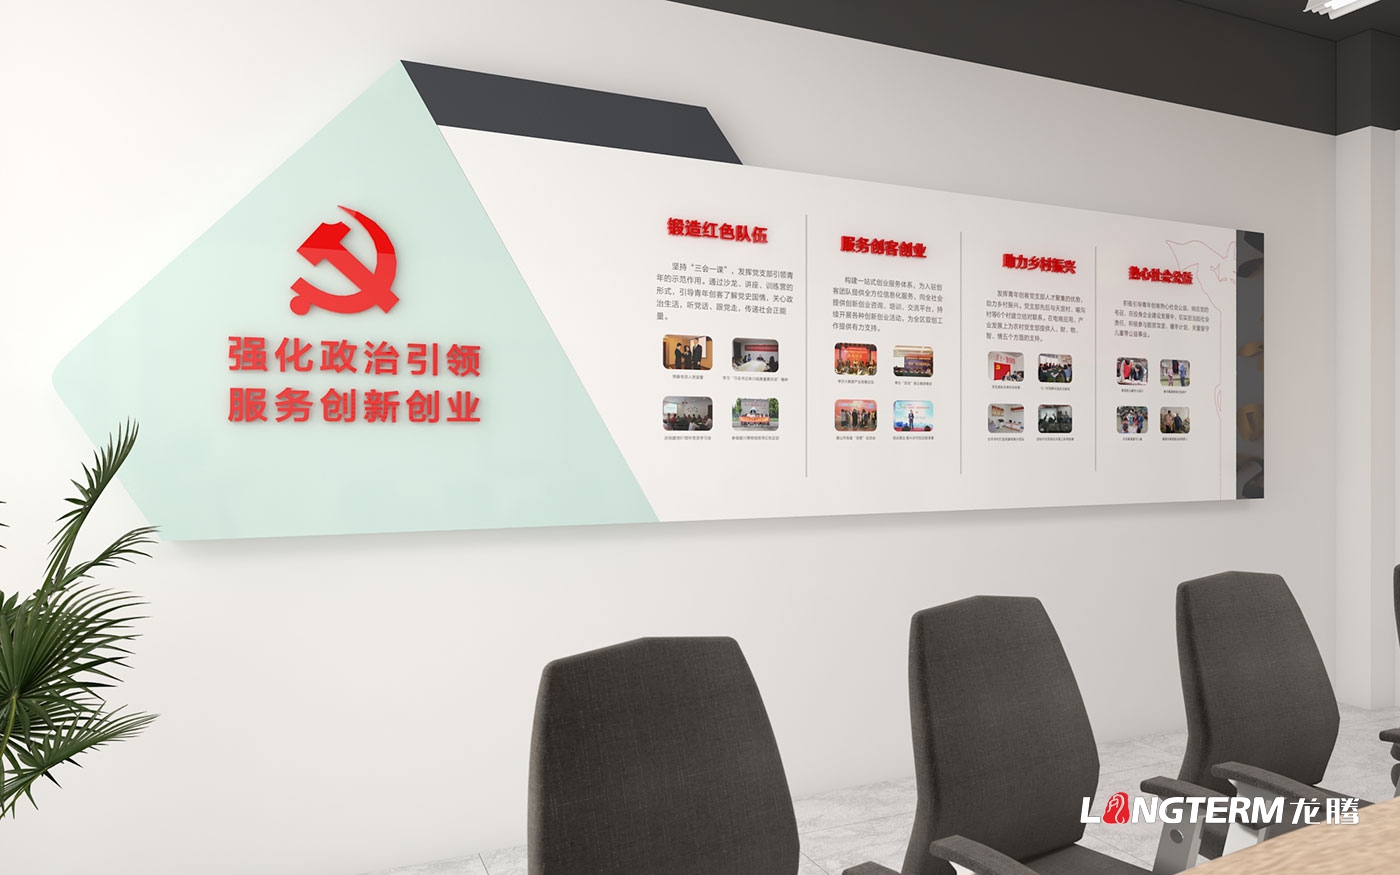 彭山区创新创业服务中心稻药产业示范园服务中心文化墙设计